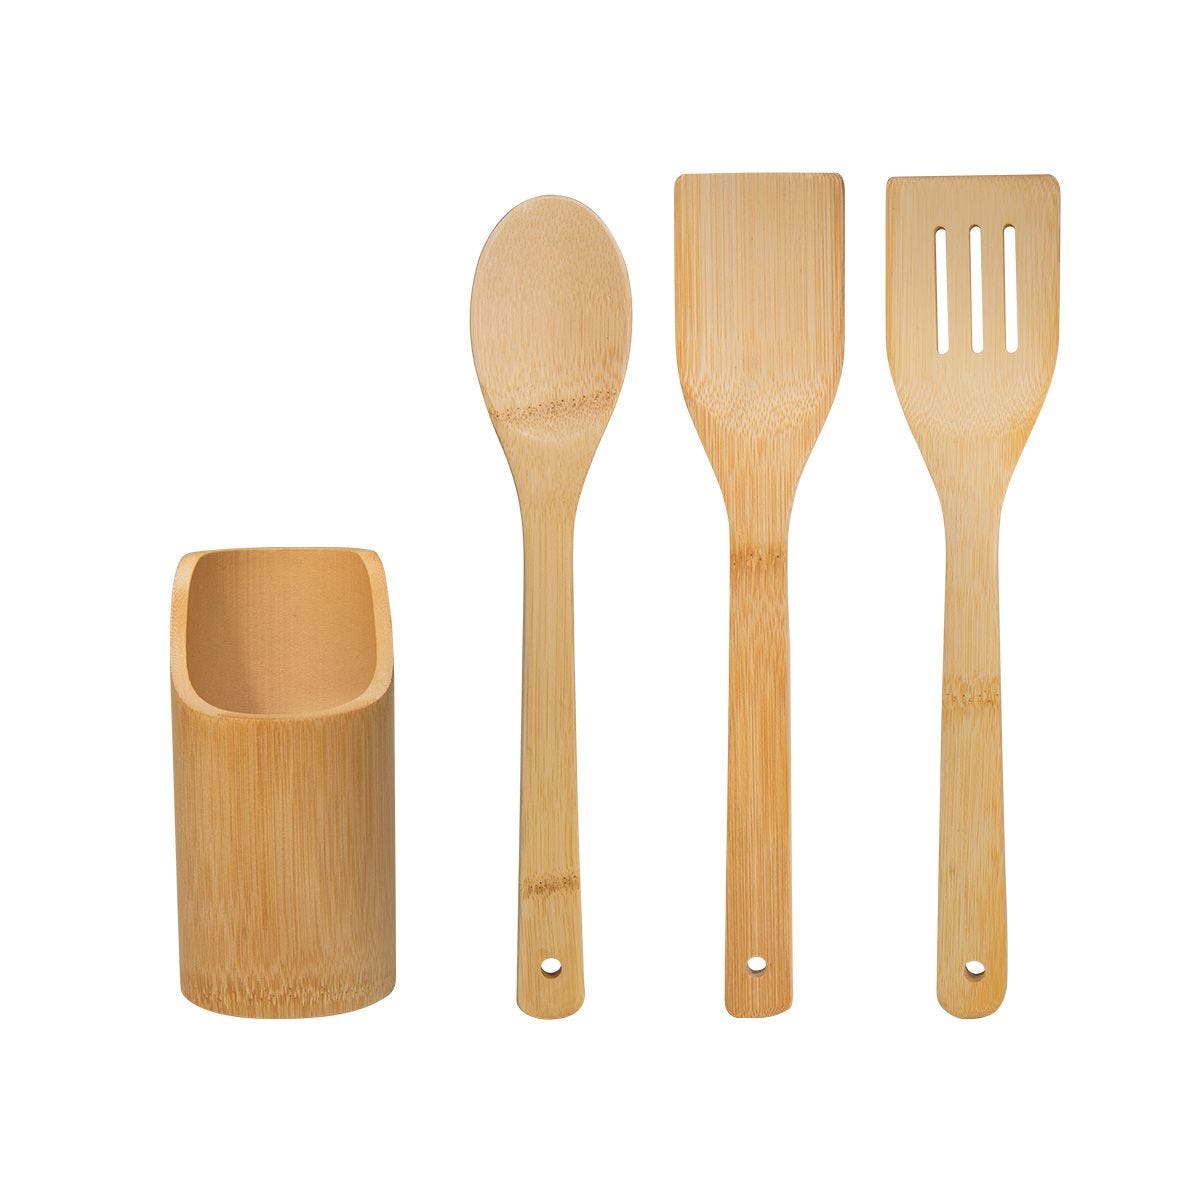 KTC 606, SET DE UTENSILIOS BOIS. Juego de 3 utensilios de bambú para cocinar. Incluye cuchara, pala, volteador y una base cilíndrica. La madera es un producto natural el cual puede presentar variaciones en tonalidades y vetas.